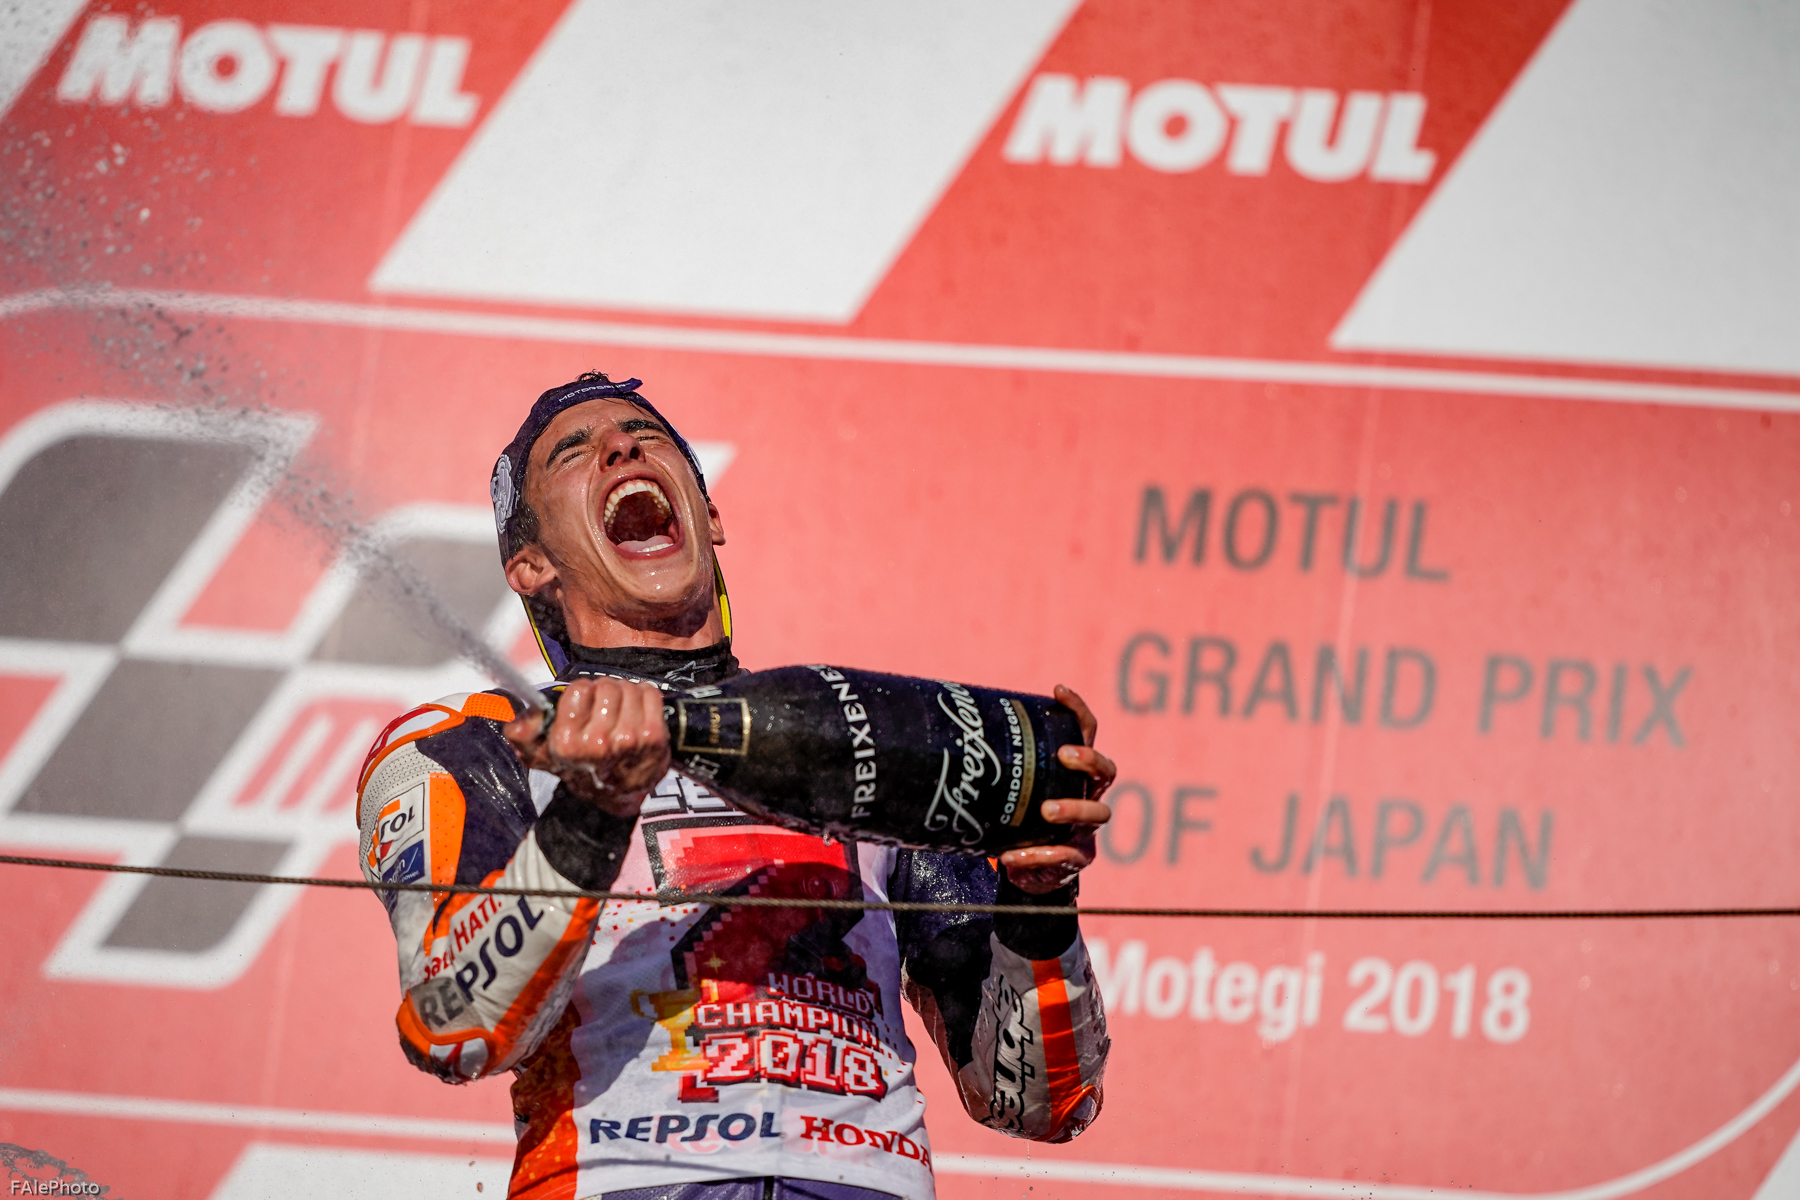 Marc Márquez – All In: winning in MotoGP™